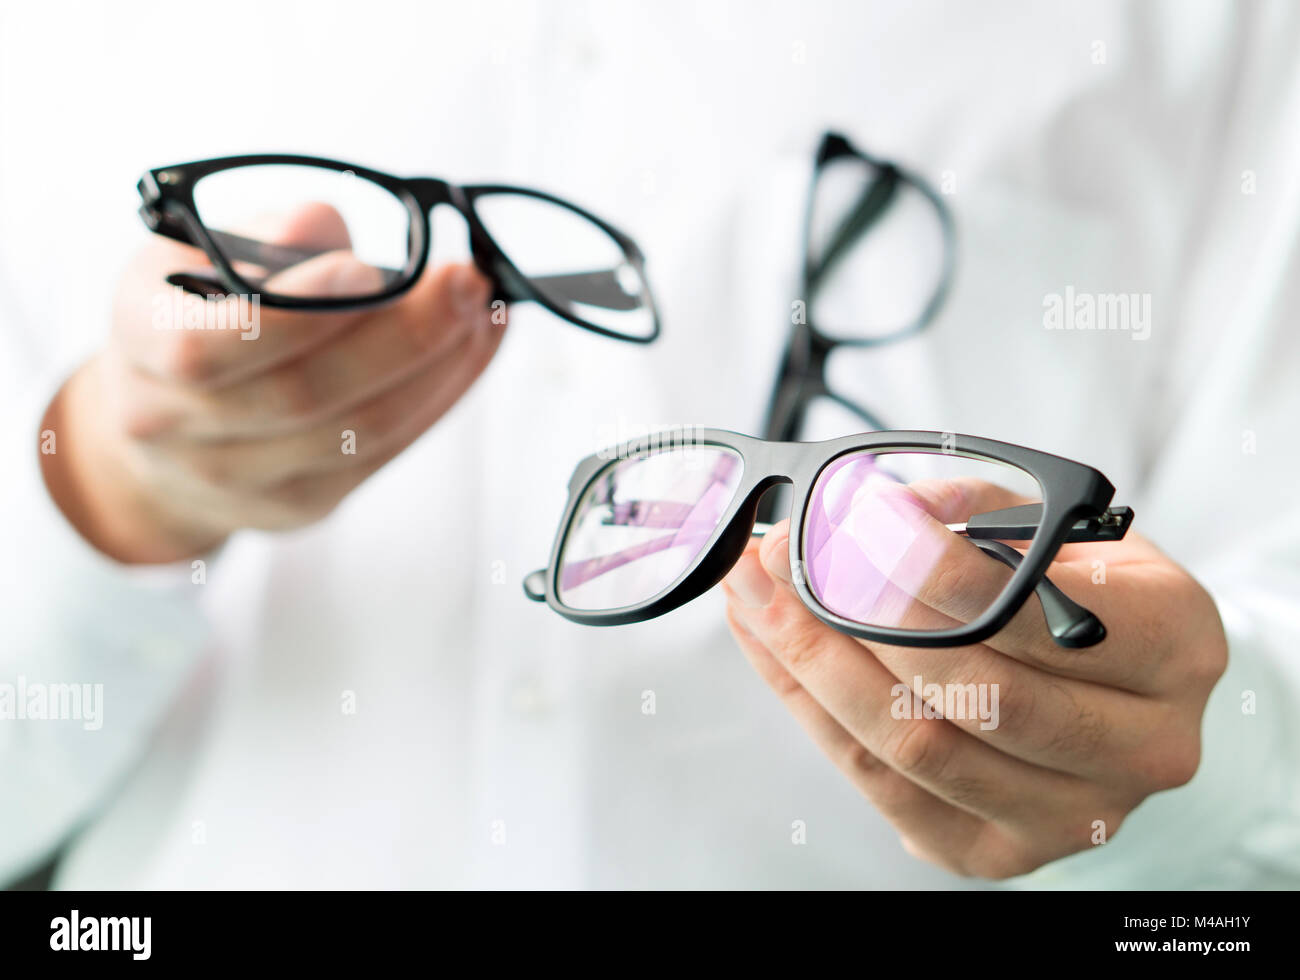 Optiker vergleichen Objektive oder Übersicht Kunden verschiedene Optionen  in Brille. Augenarzt, die neue Brille. Professionelle Optometriker in  weißen Mantel Stockfotografie - Alamy